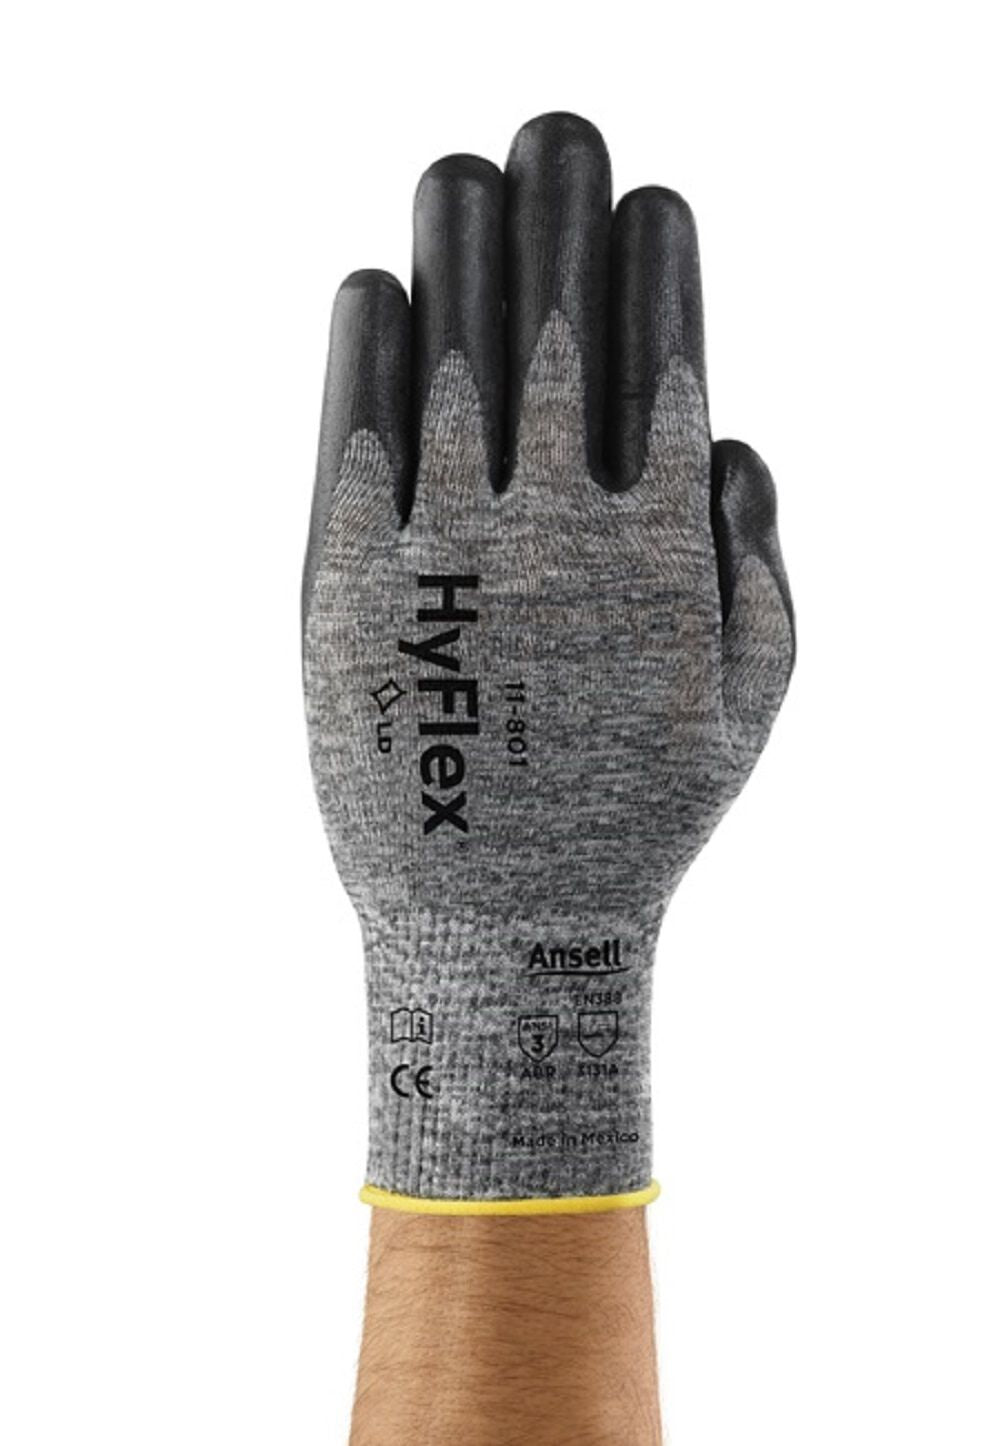 HyFlex Dark Liner Nitrile Glove - Size 10, One Pair of Gloves 11-801-10